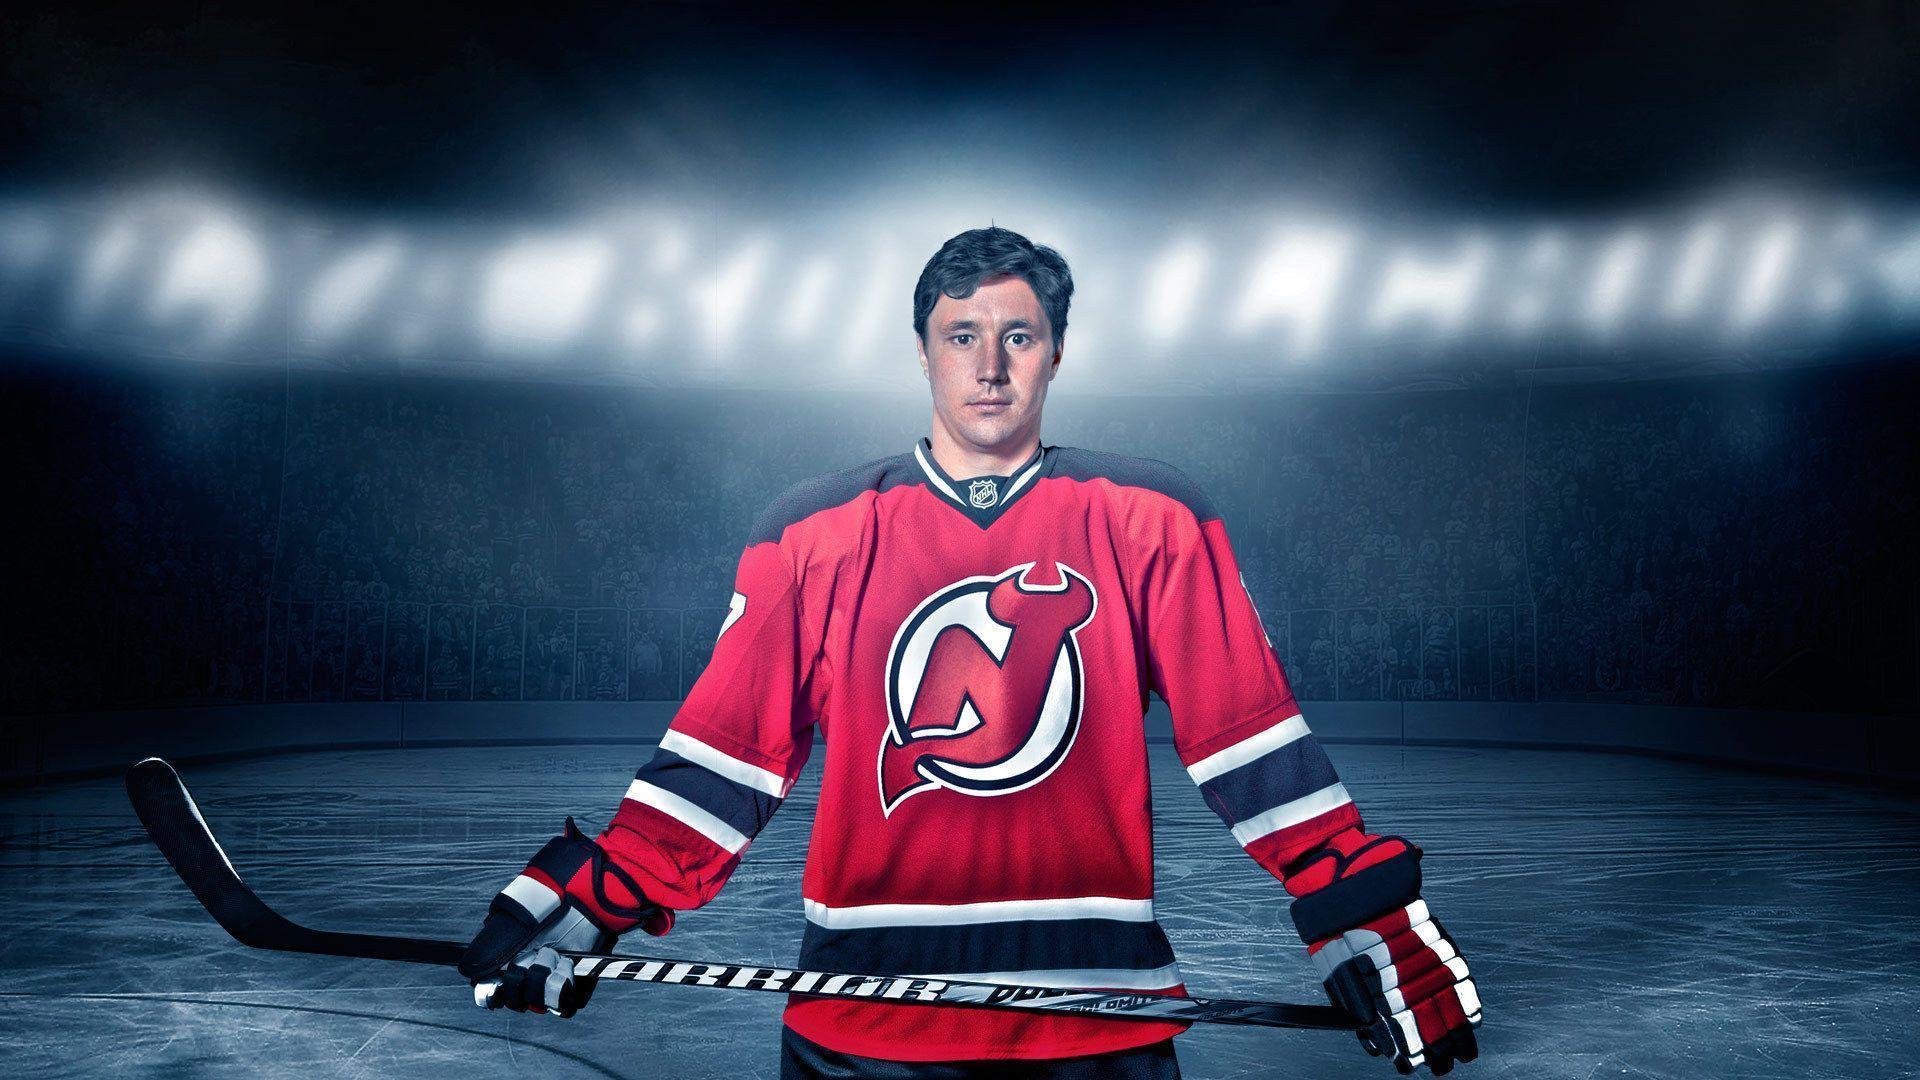 Best NHL player Ilya Kovalchuk wallpaper and image